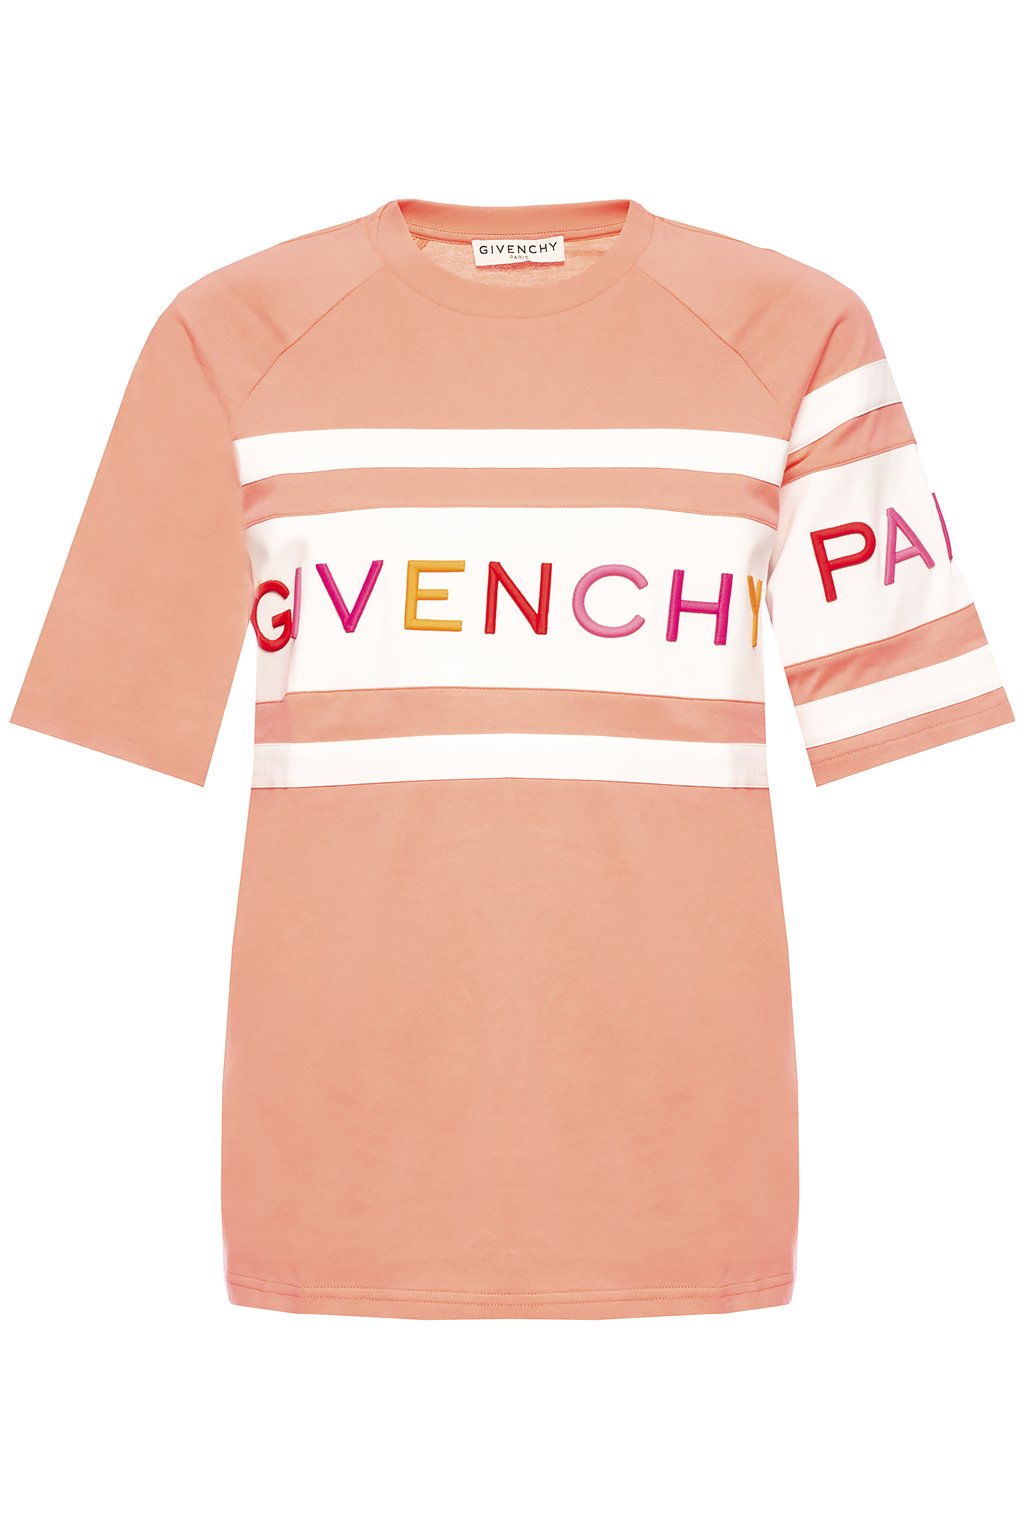 givenchy pink t shirt